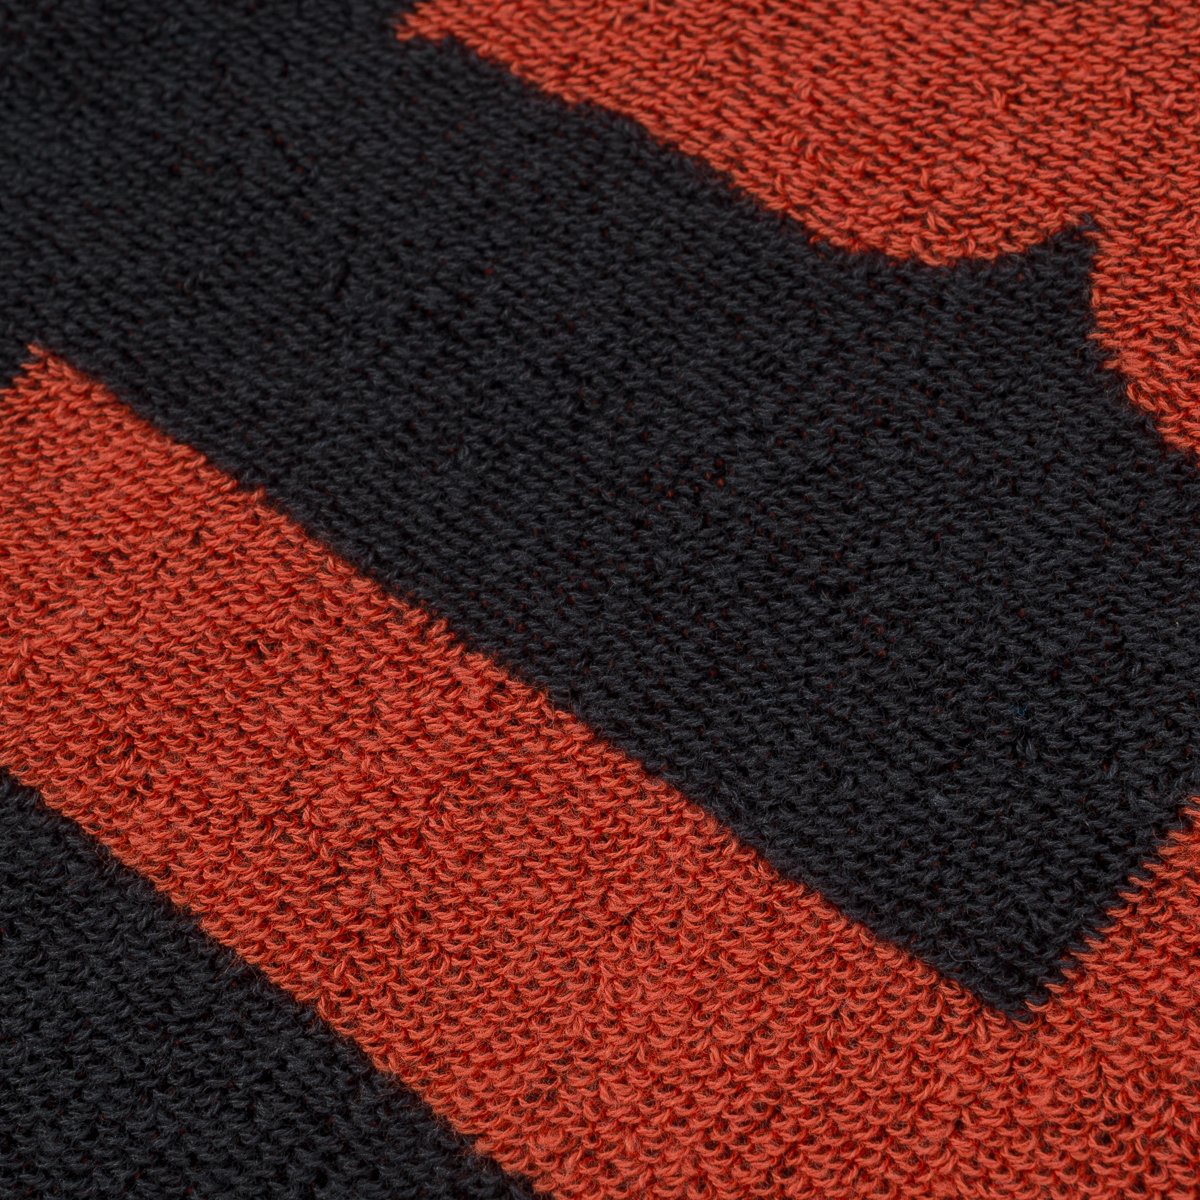 Iron Heart - Ihg-065 Small Imabari Towel - Orange/Black